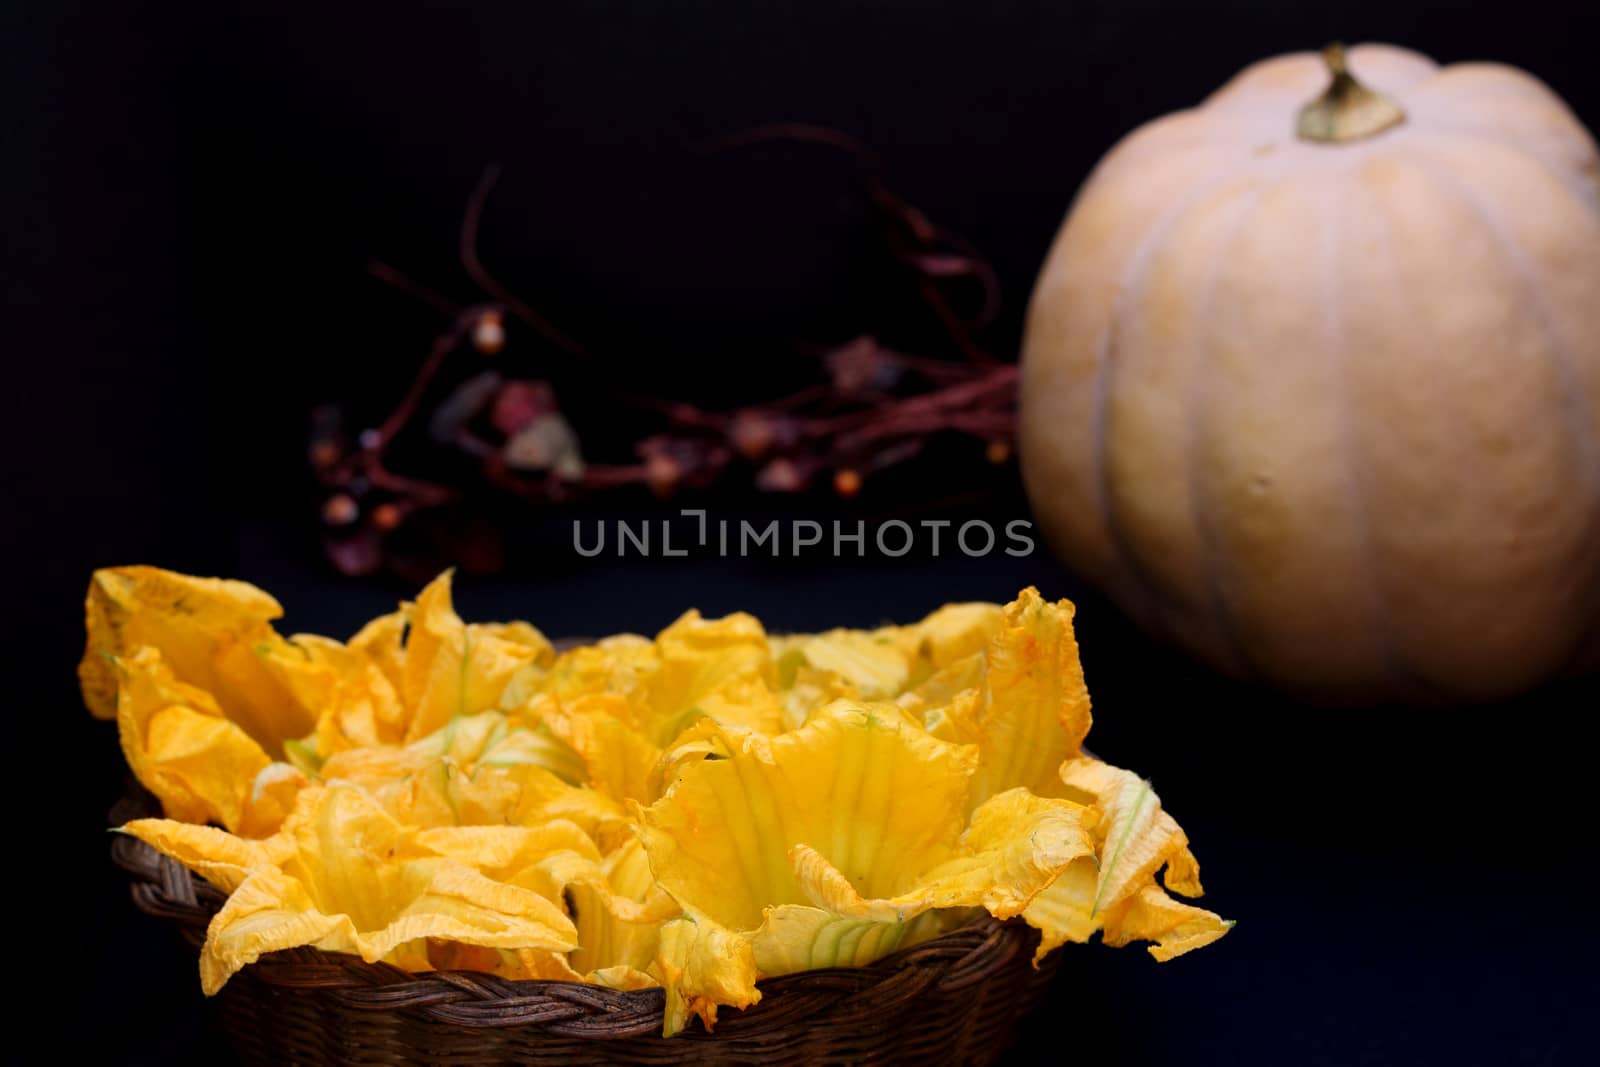 Pumpkin flowers and pumpkin on dark background